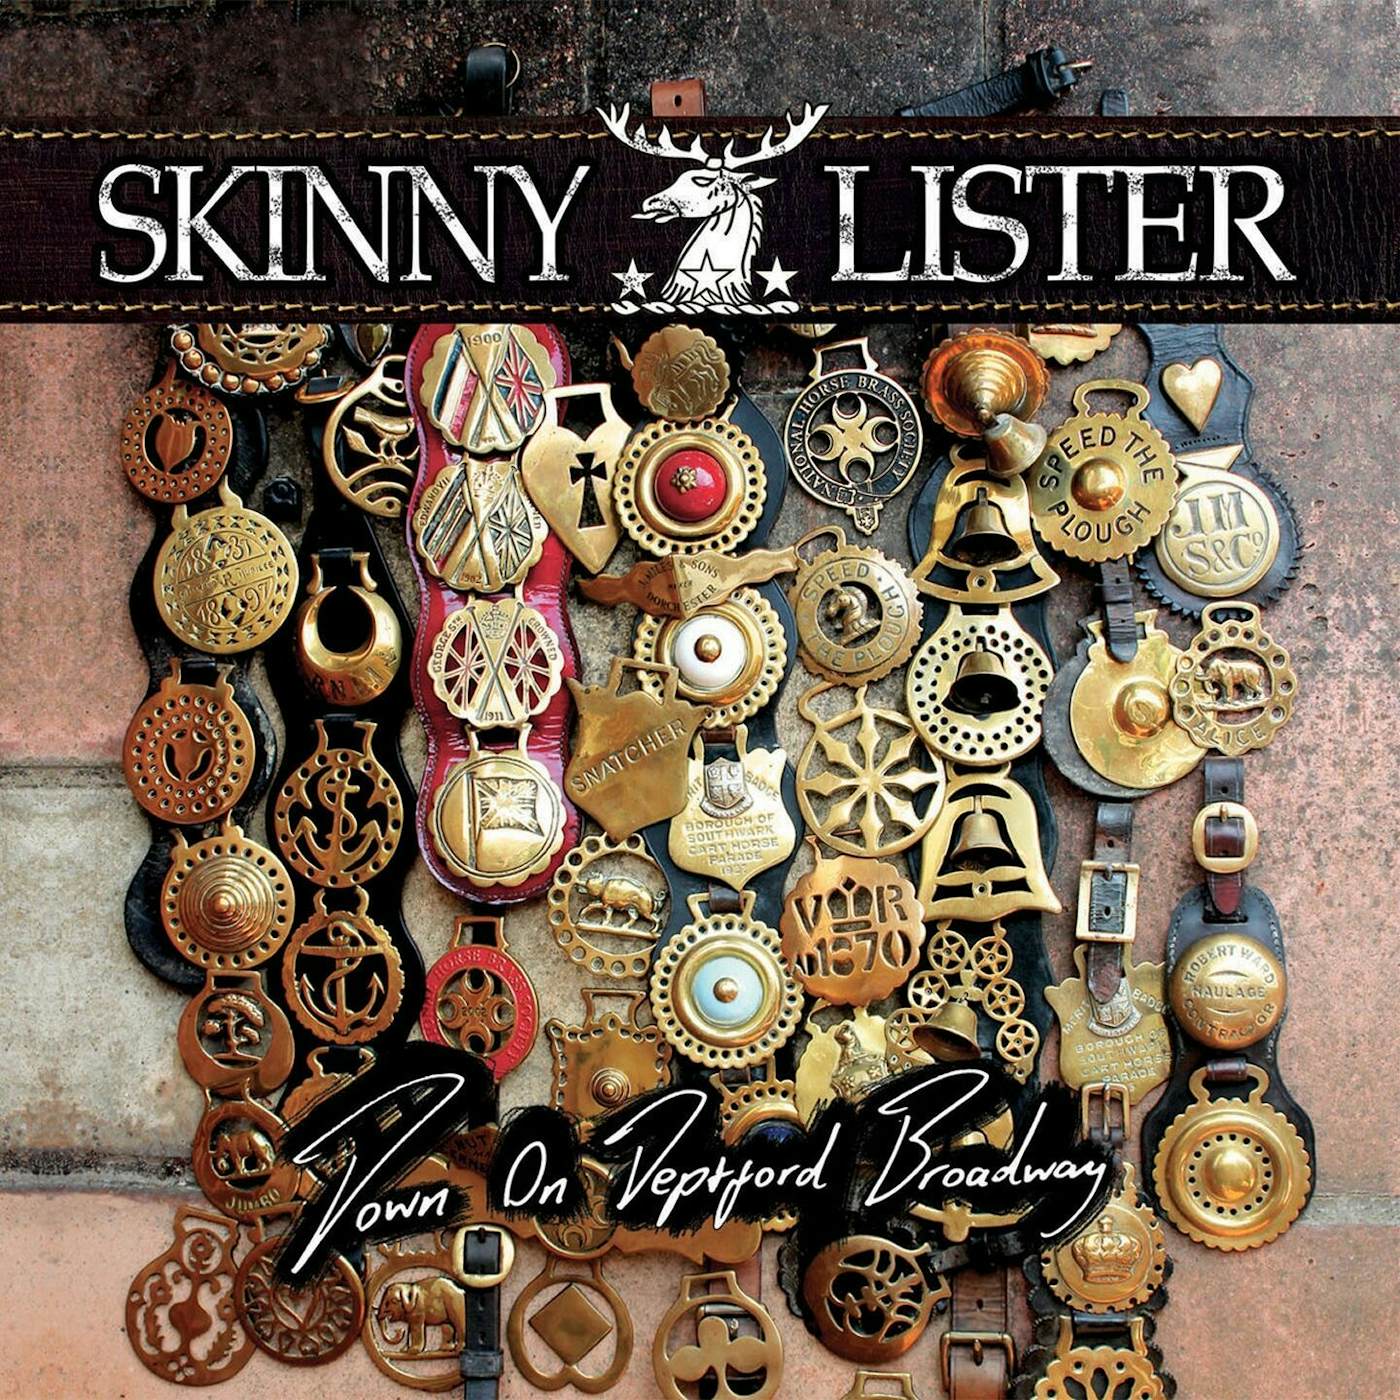 Skinny Lister / Down On Deptford Broadway - LP (Vinyl)